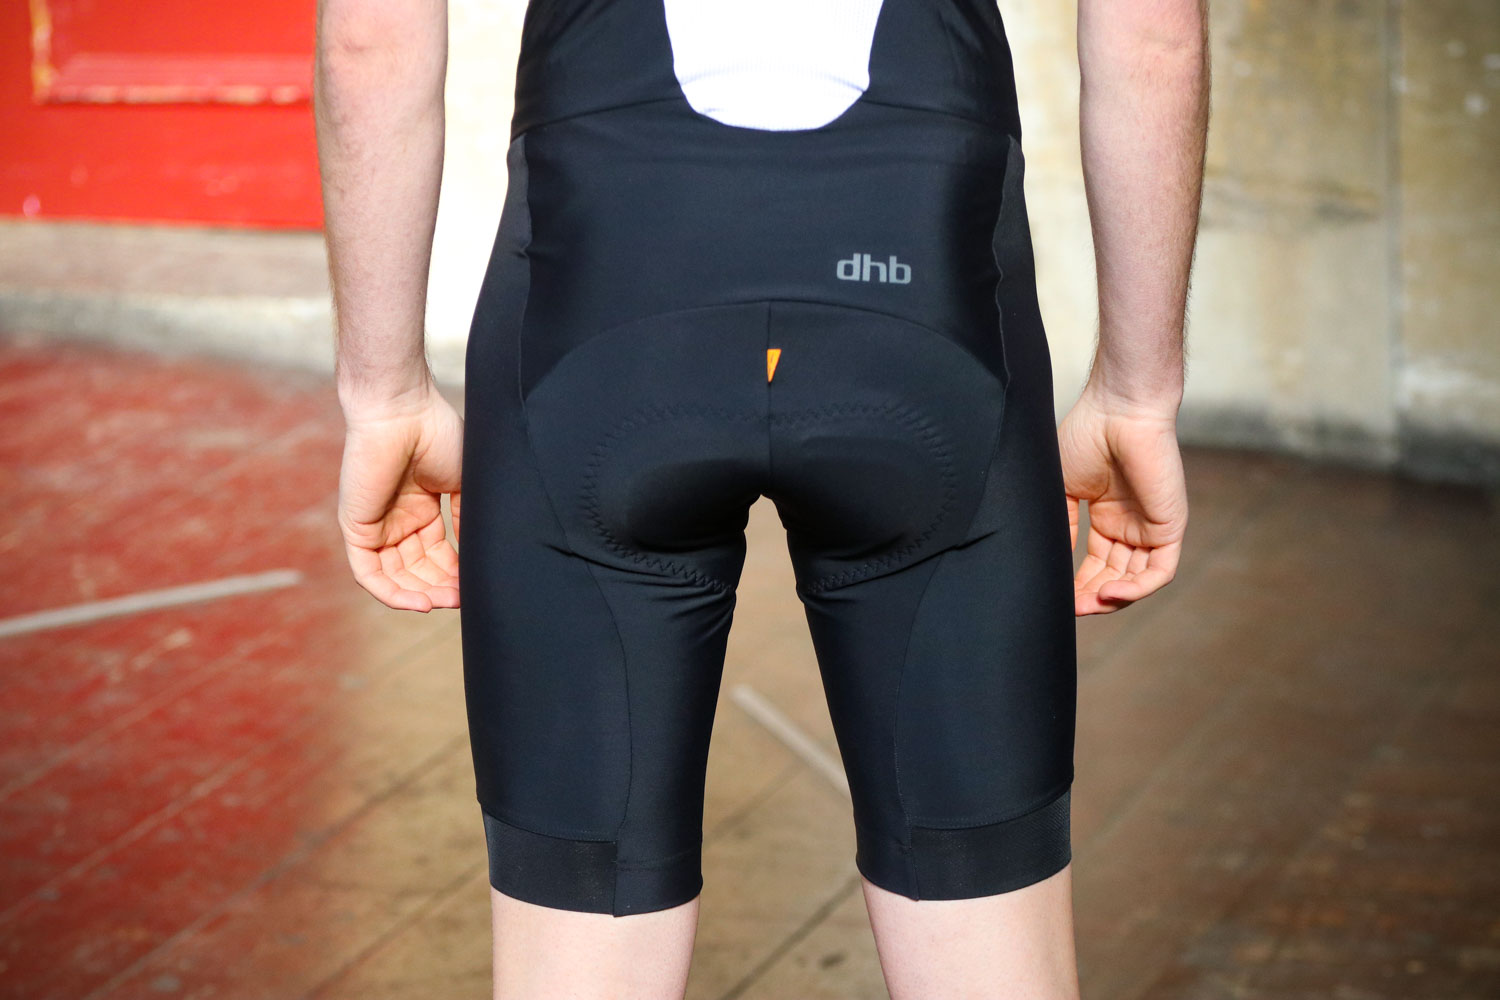 dhb aeron ultra bib shorts